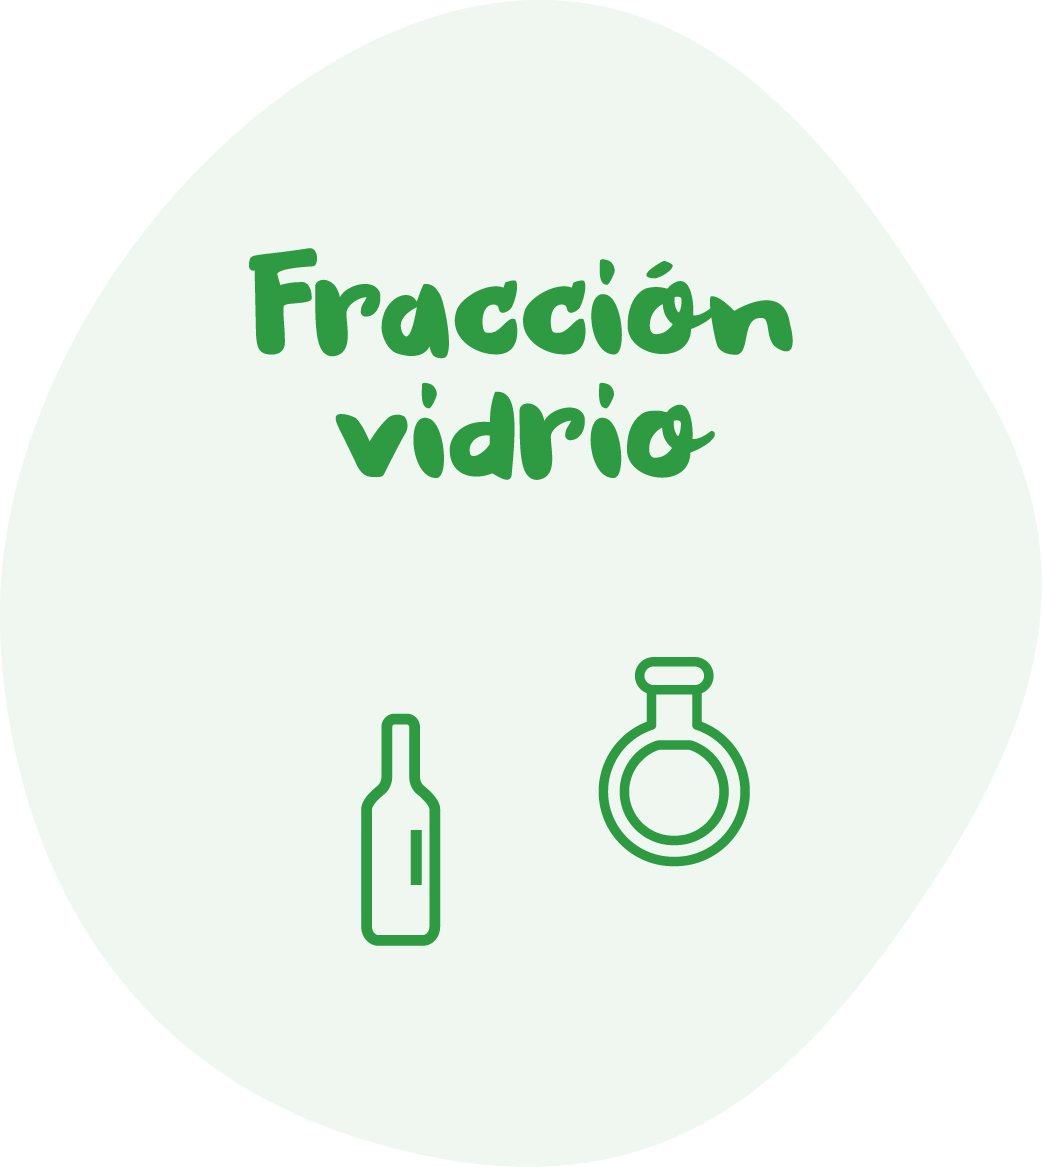 Fracción vidrio